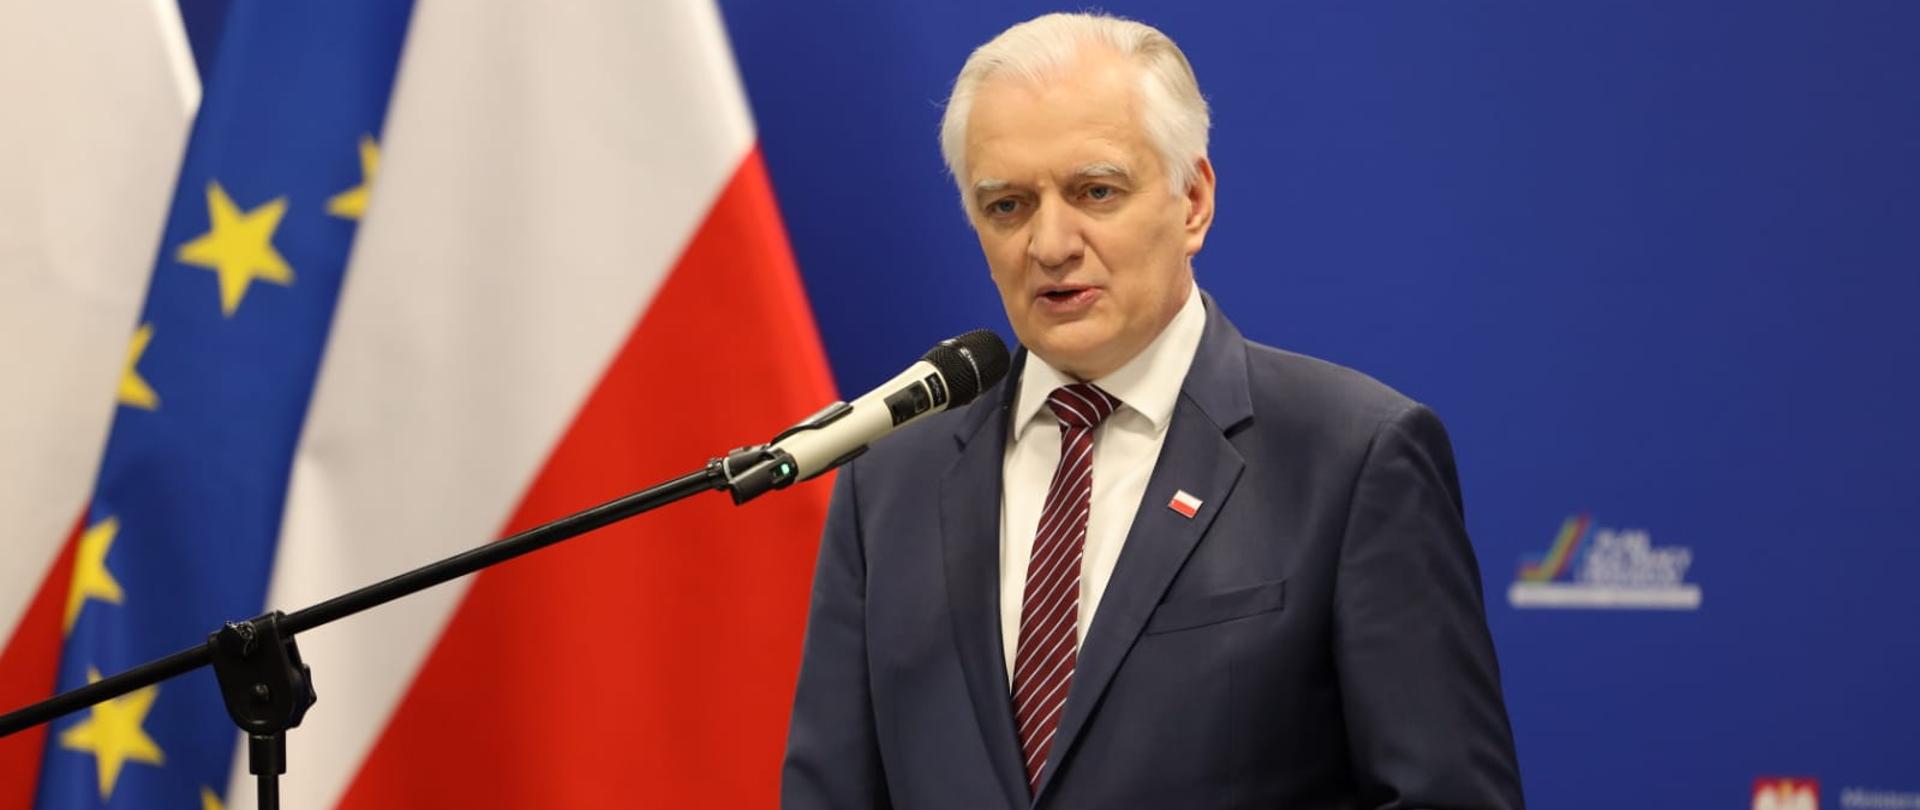 Wicepremier Jarosław Gowin przemawia zza mównicy. W tle flagi Polski i UE oraz ścianka z logotypami MRPiT.